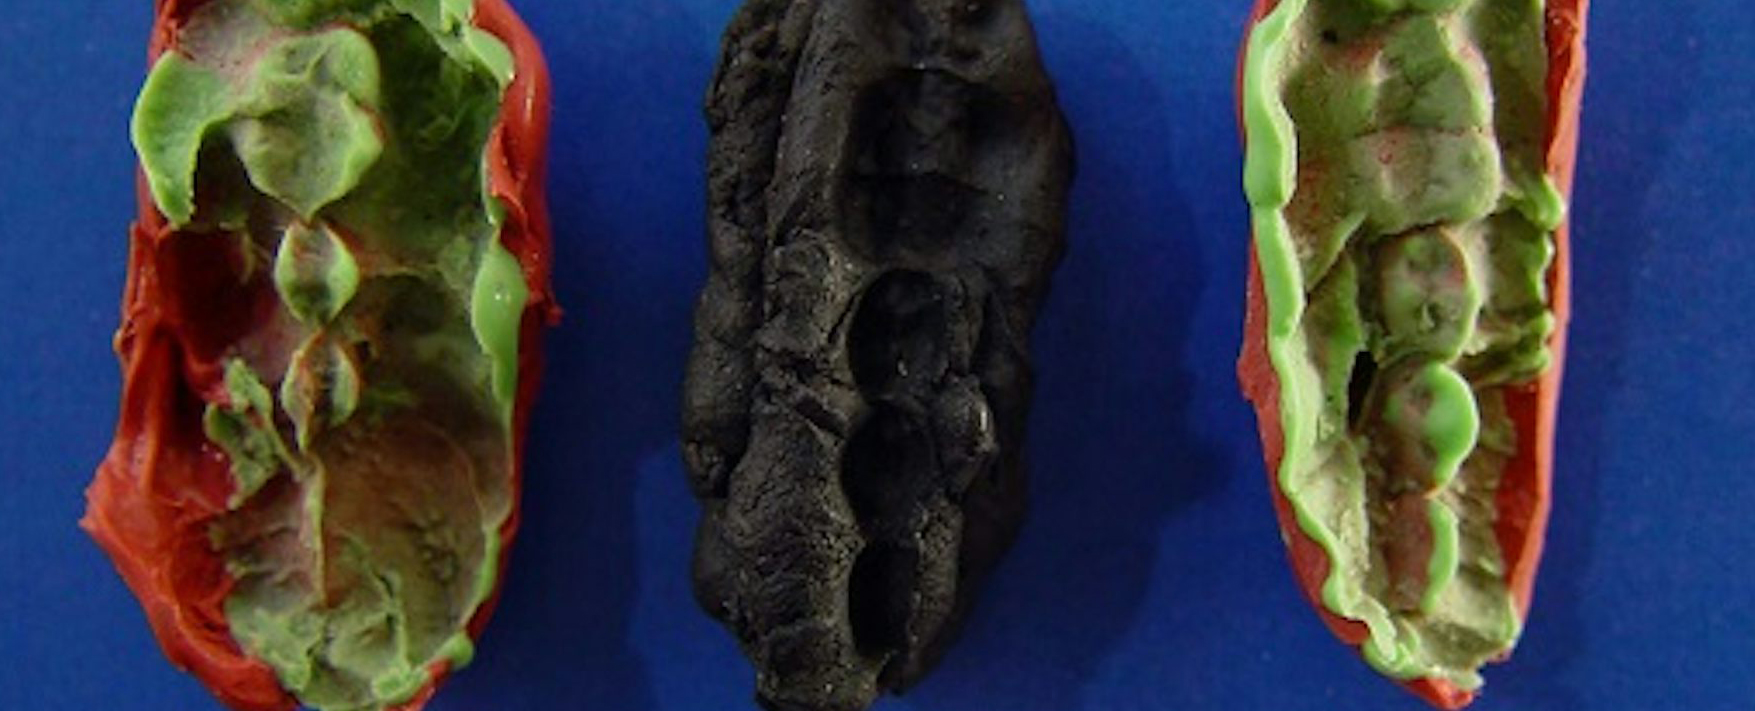 Guma do żucia używana przez nastolatków w epoce kamienia łupanego ukazuje życie 9700 lat temu ze zdumiewającymi szczegółami